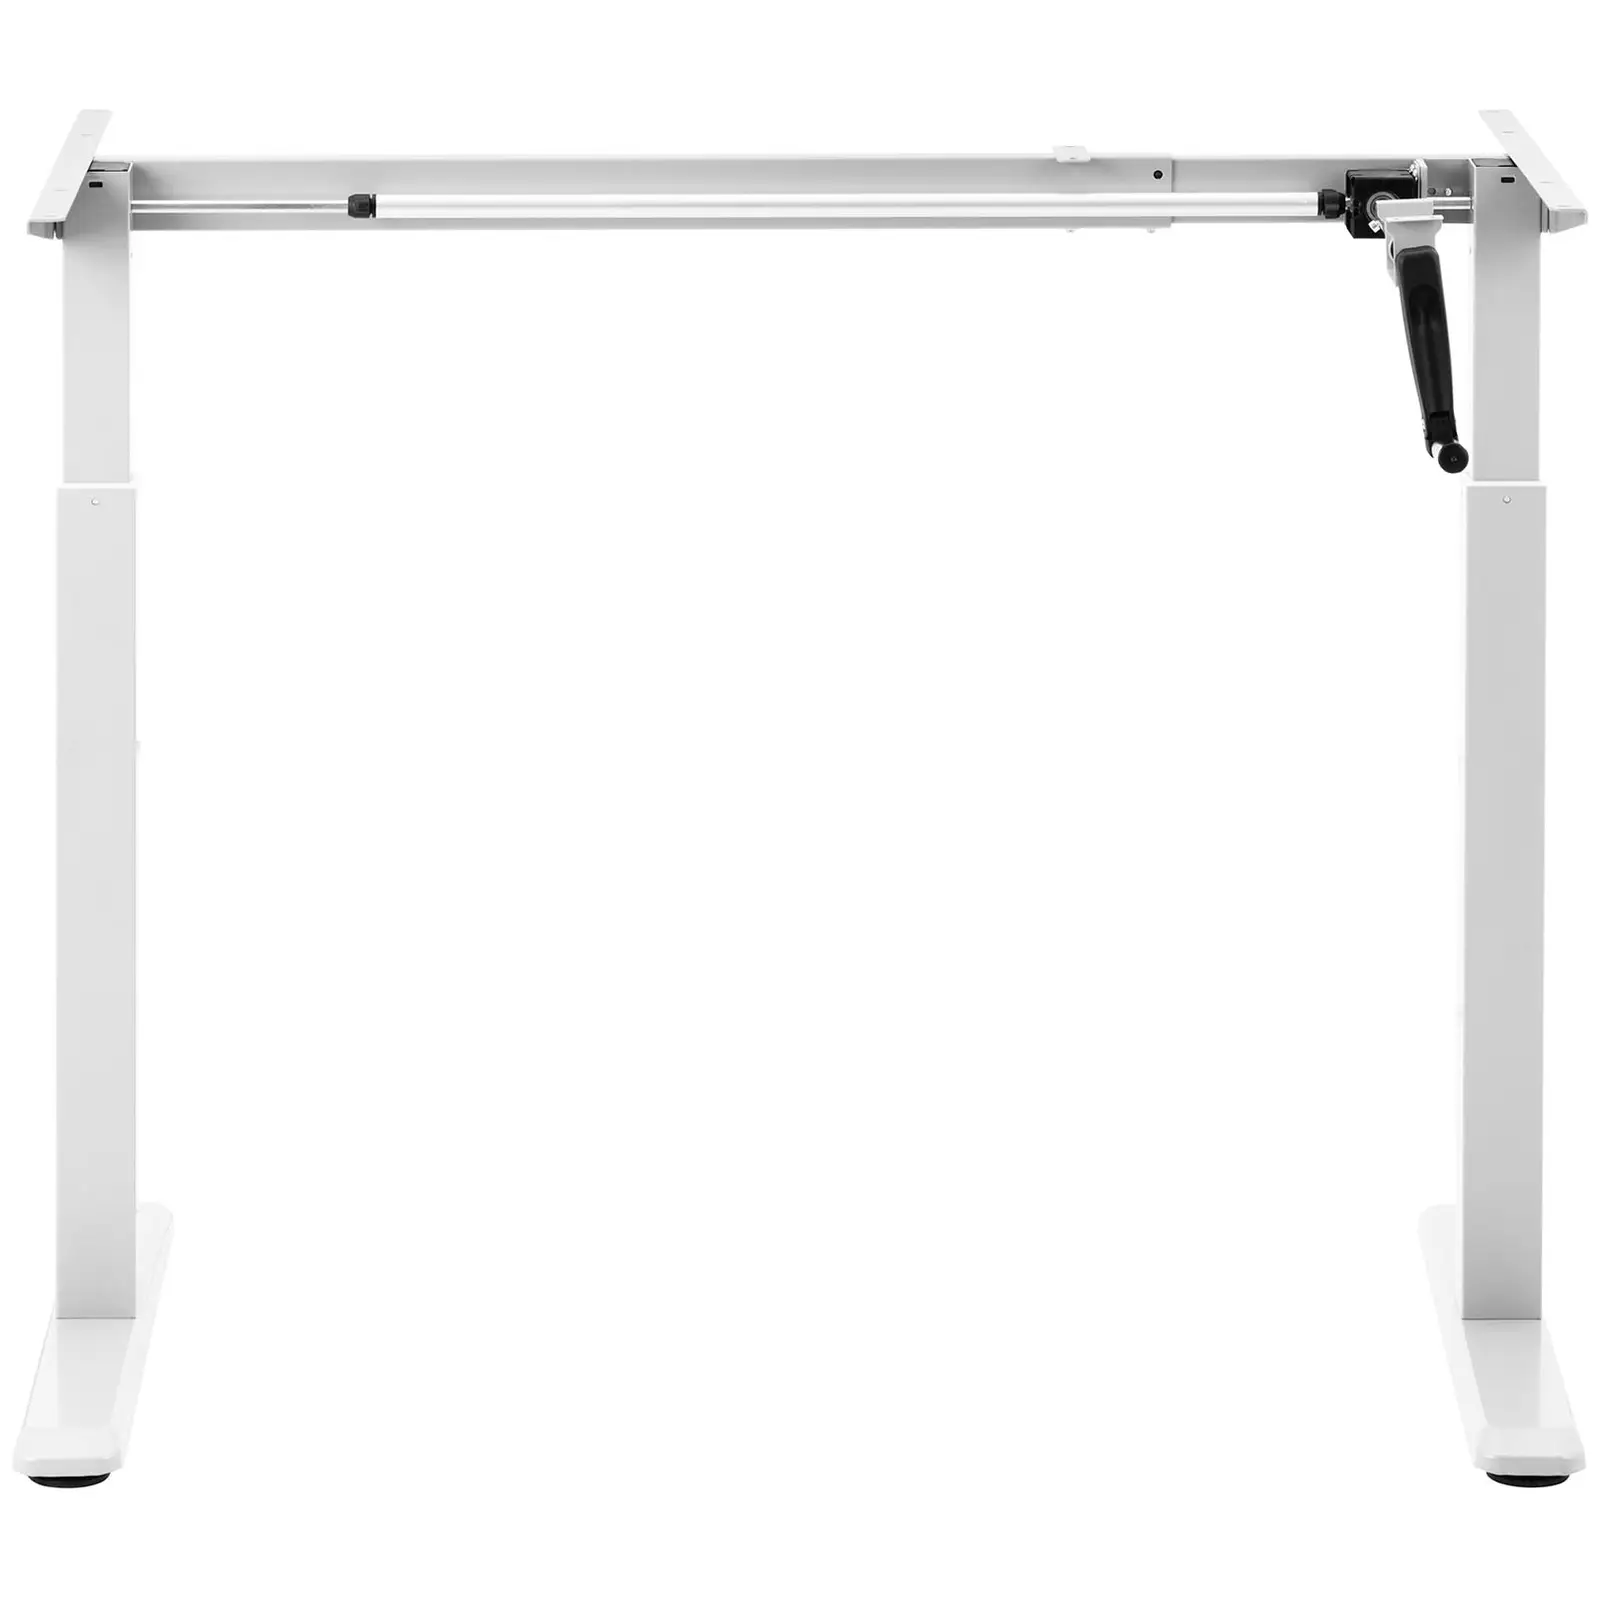 Bastidor para mesa con ajuste de altura - manual - 70 kg - blanco